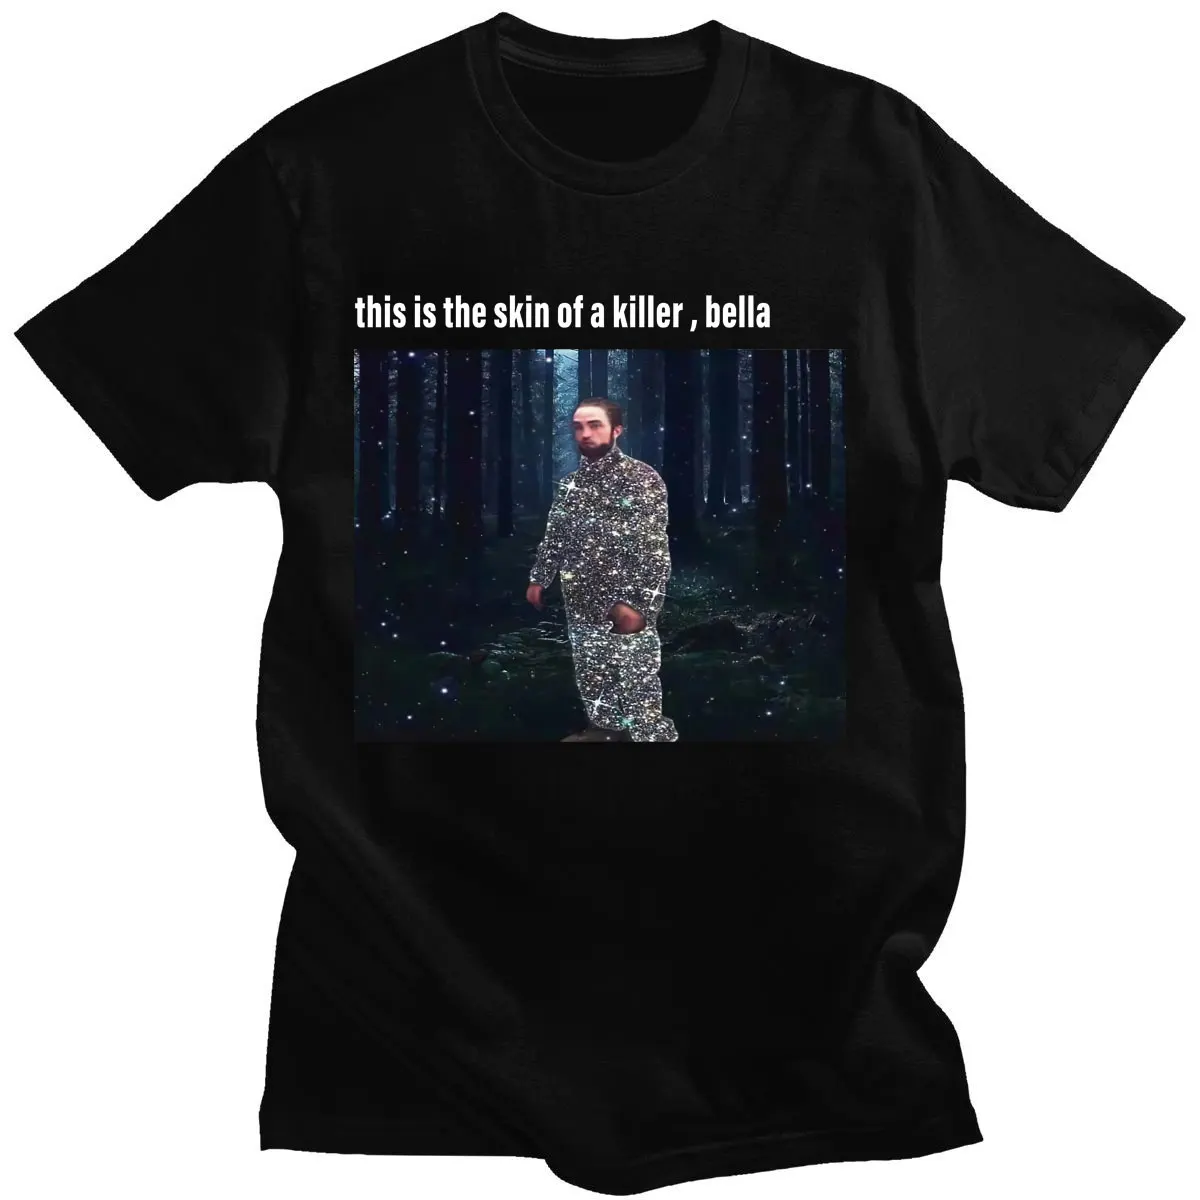 

Забавная футболка Роберта Пэттинсона с стоячим мемом для мужчин, мягкие хлопковые футболки, топы, Винтажная Футболка Роба, новинка с коротк...